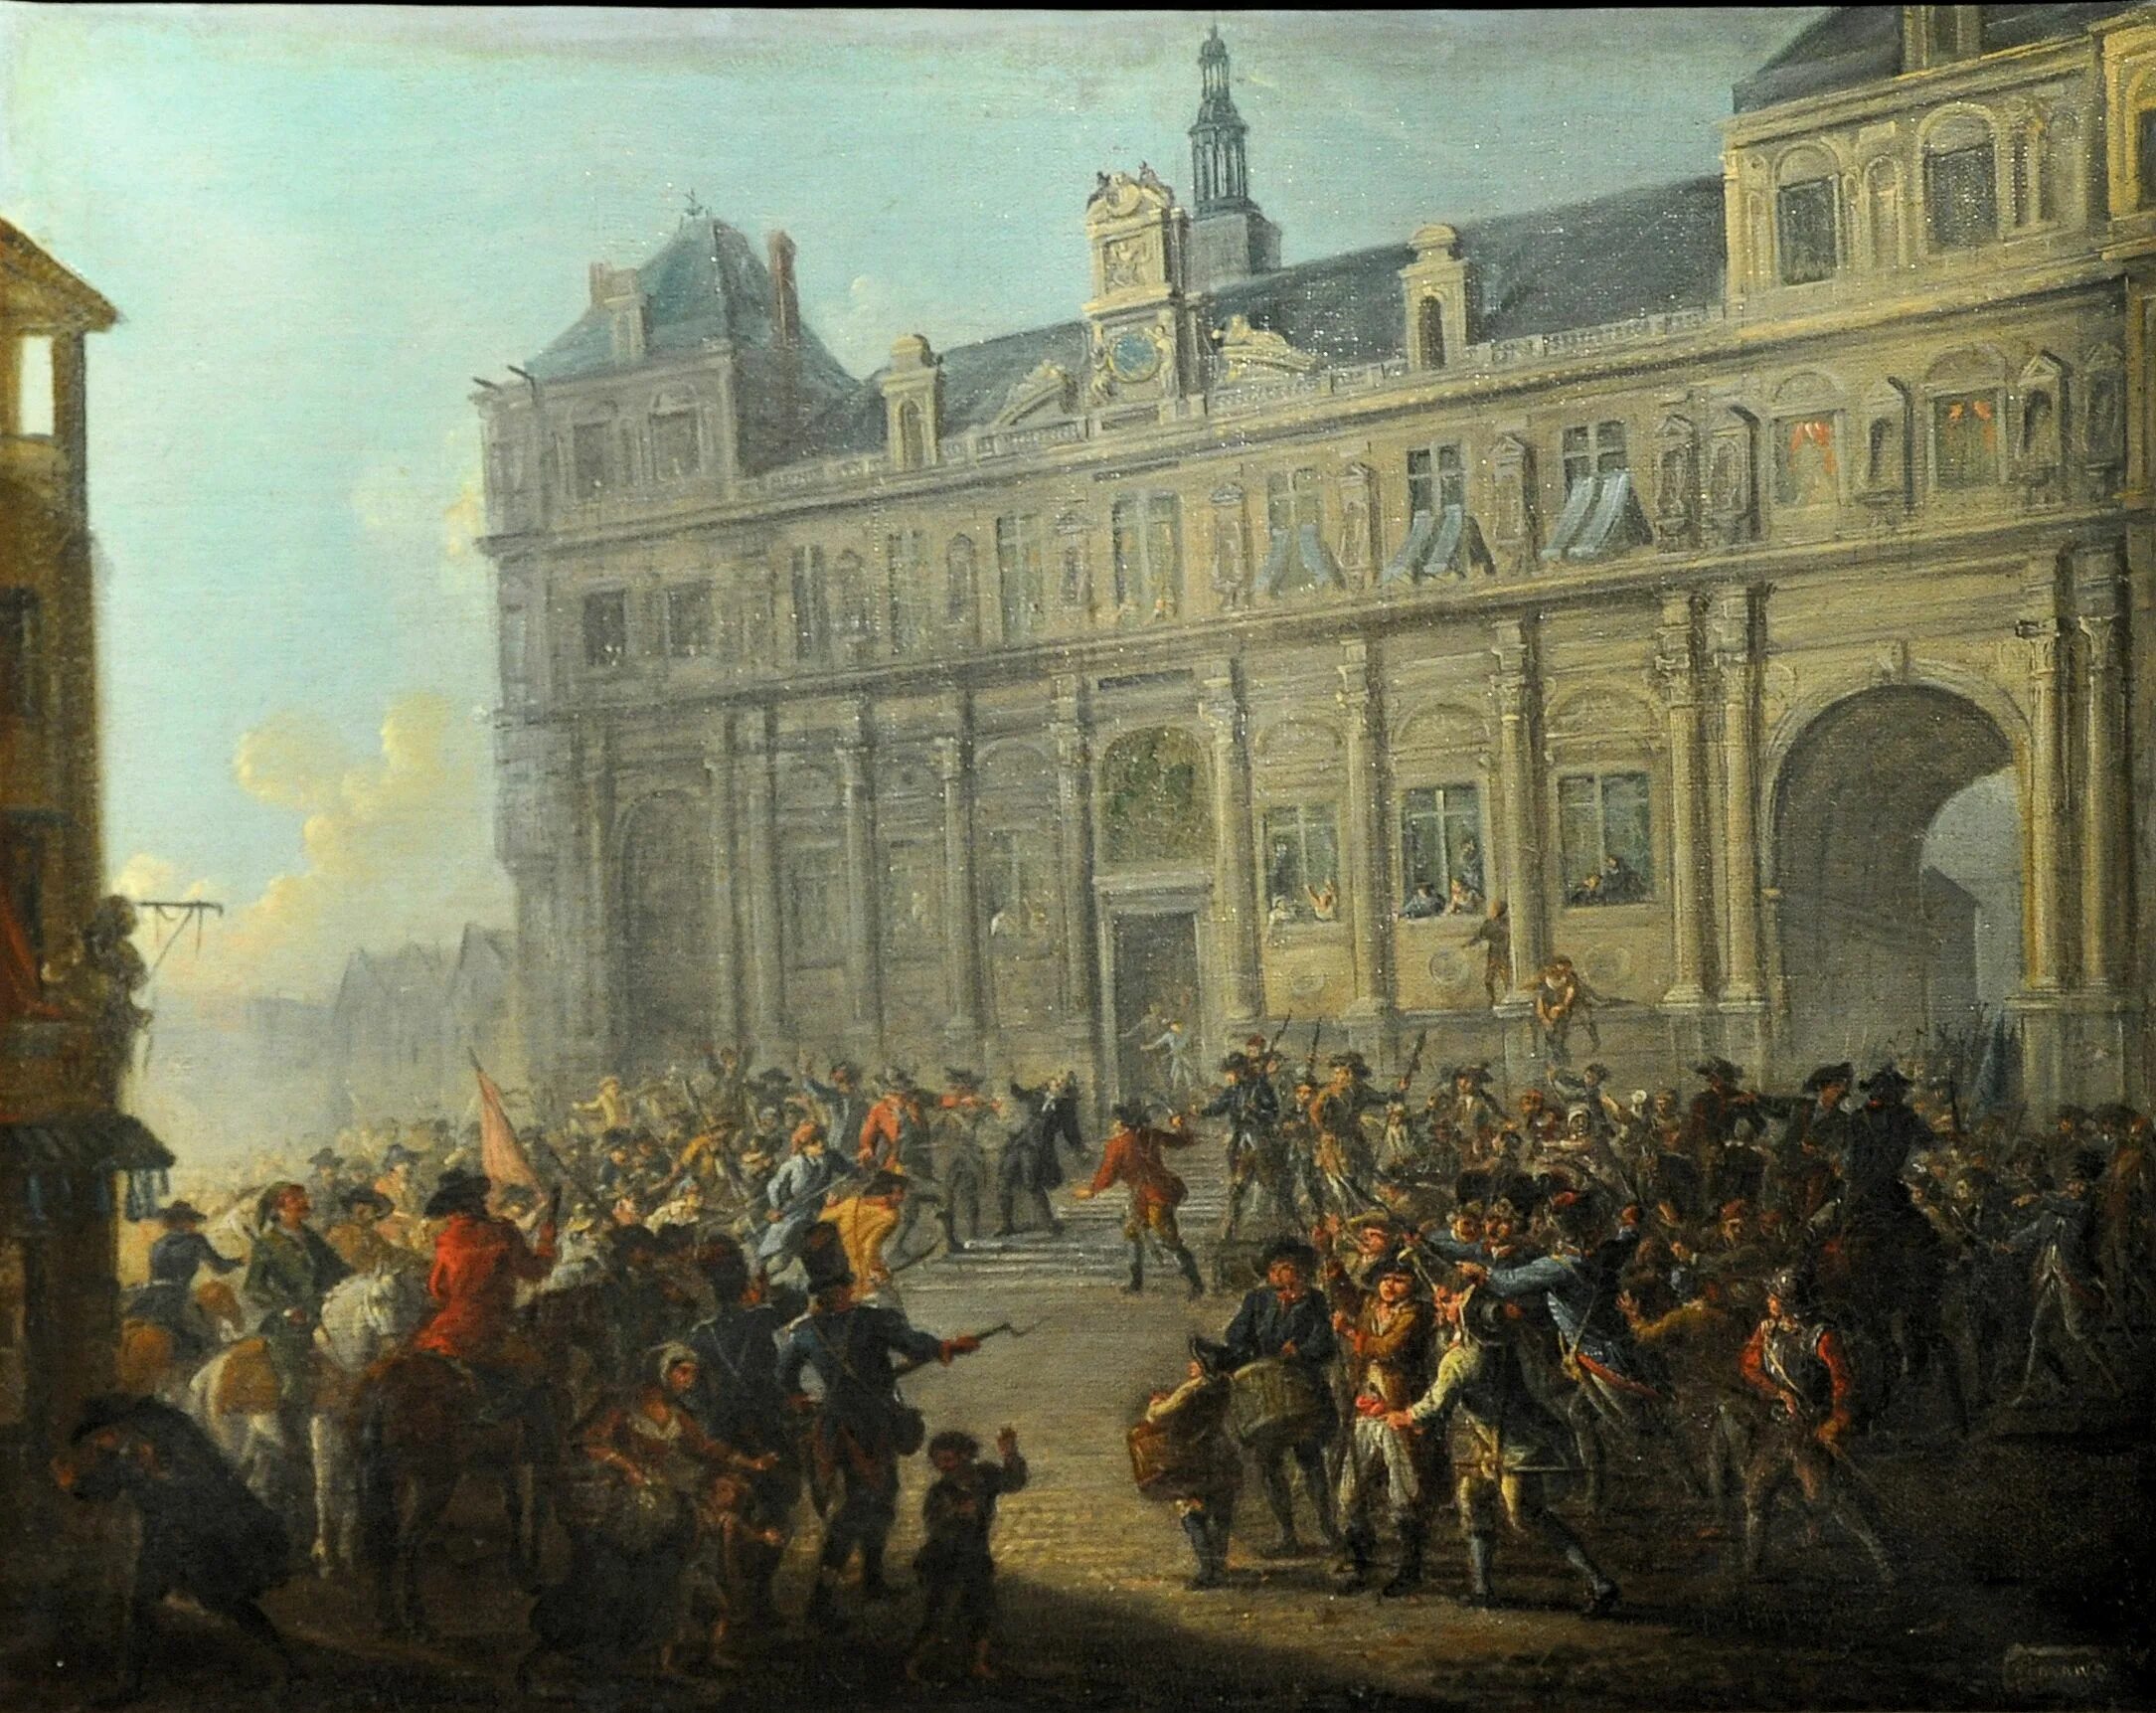 Француз 18. Великая французская революция 1789. Революция во Франции 1789. Париж 1789. Штурм Бастилии 14 июля 1789 года.